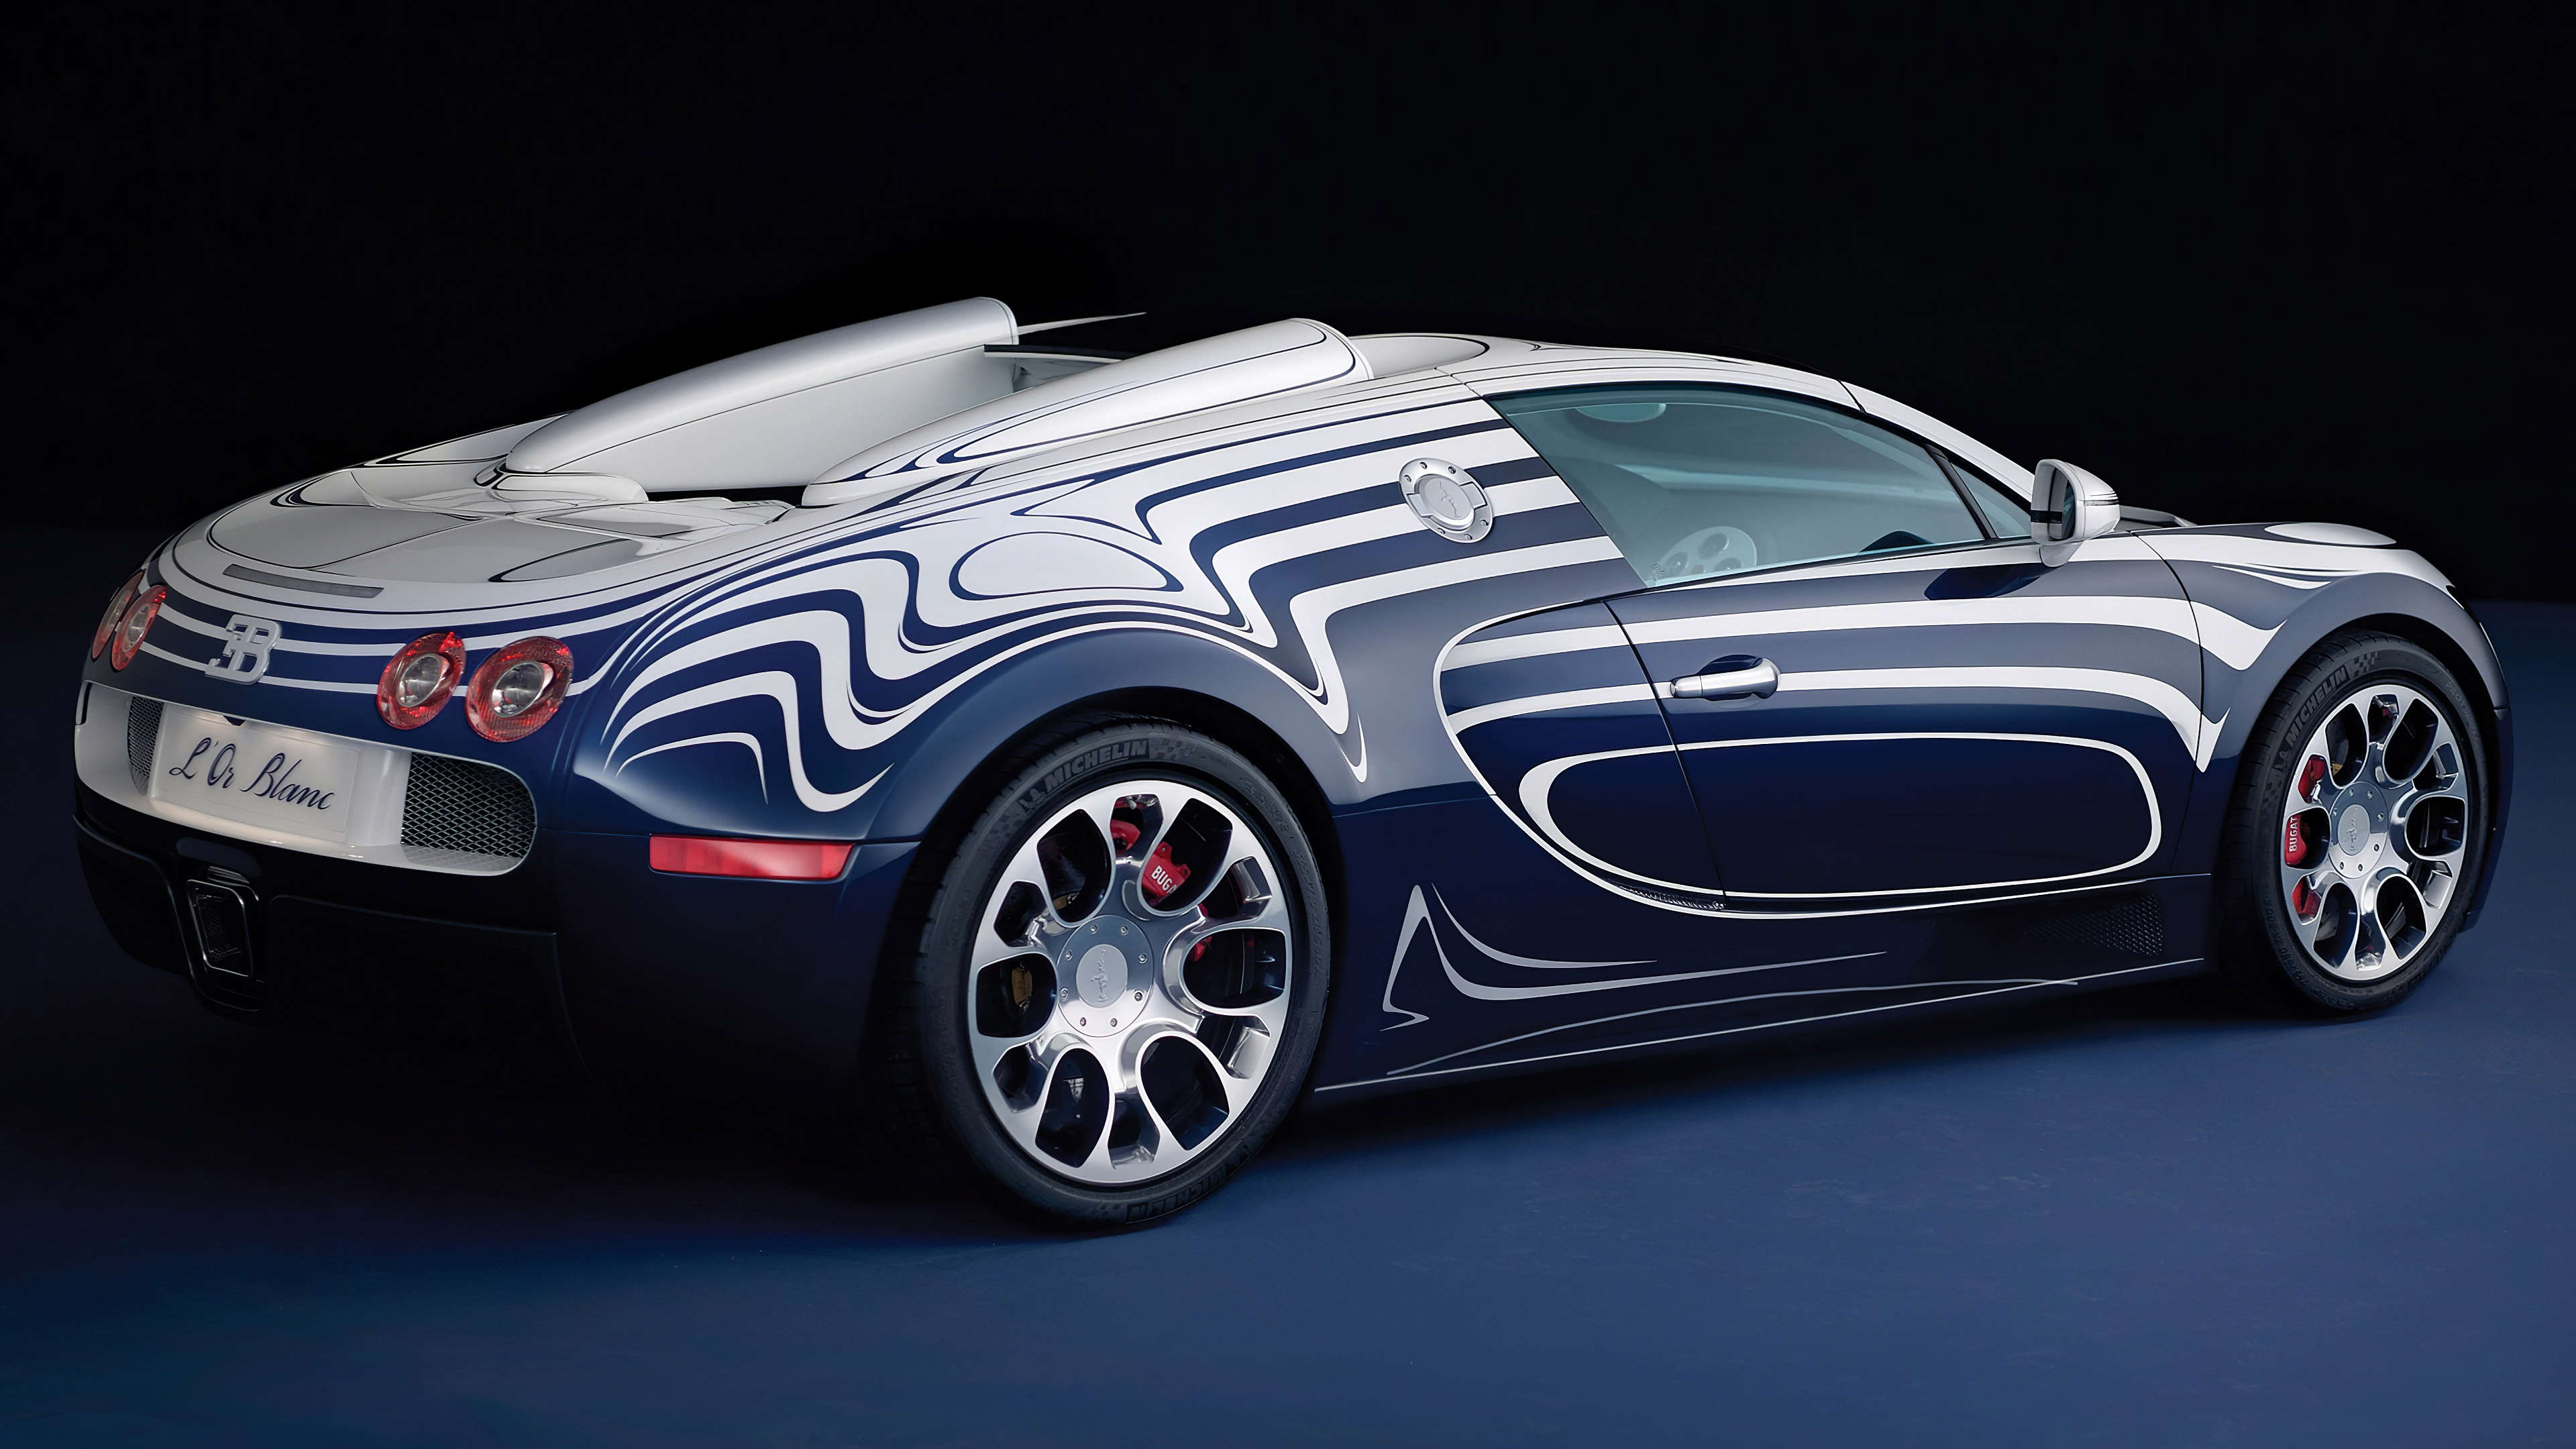 Télécharger des fonds d'écran Bugatti Veyron Grand Sport L'or Blanc HD